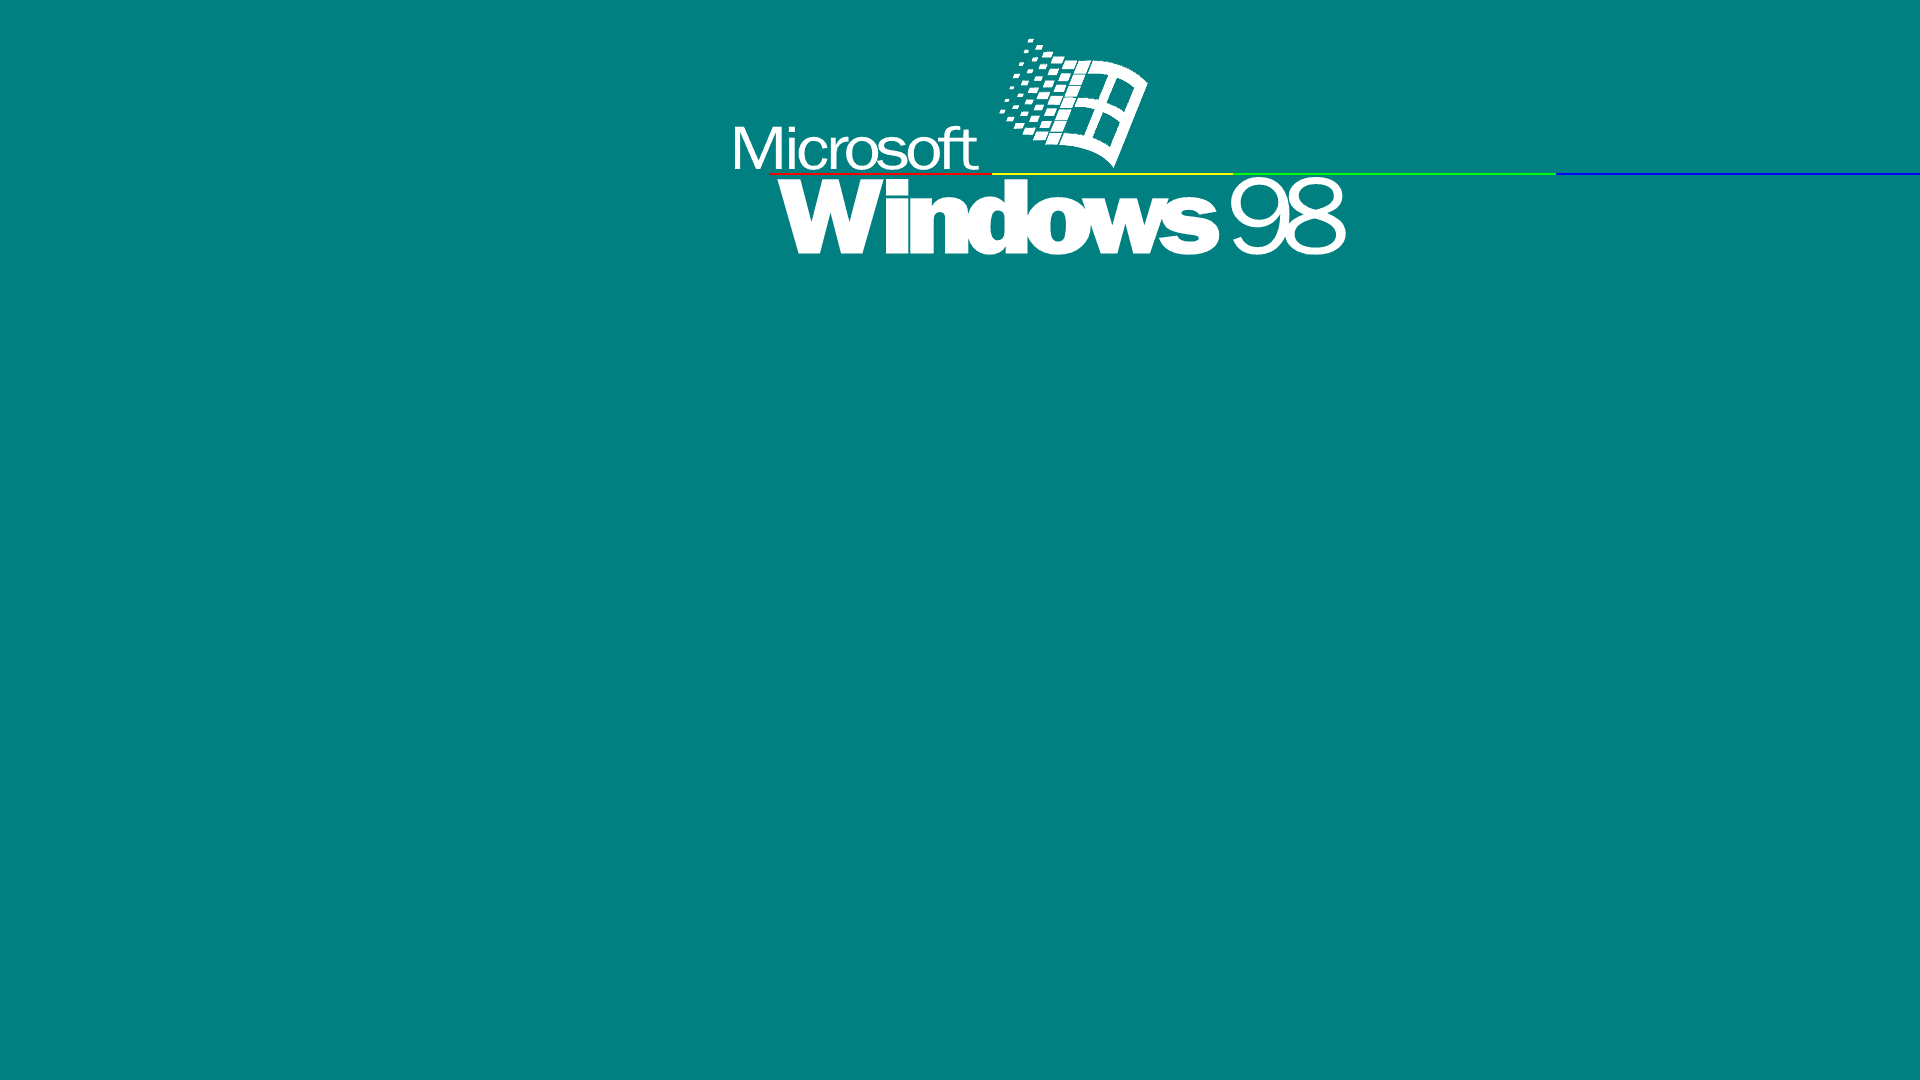 Logodi Windows 98 In Verde Acqua